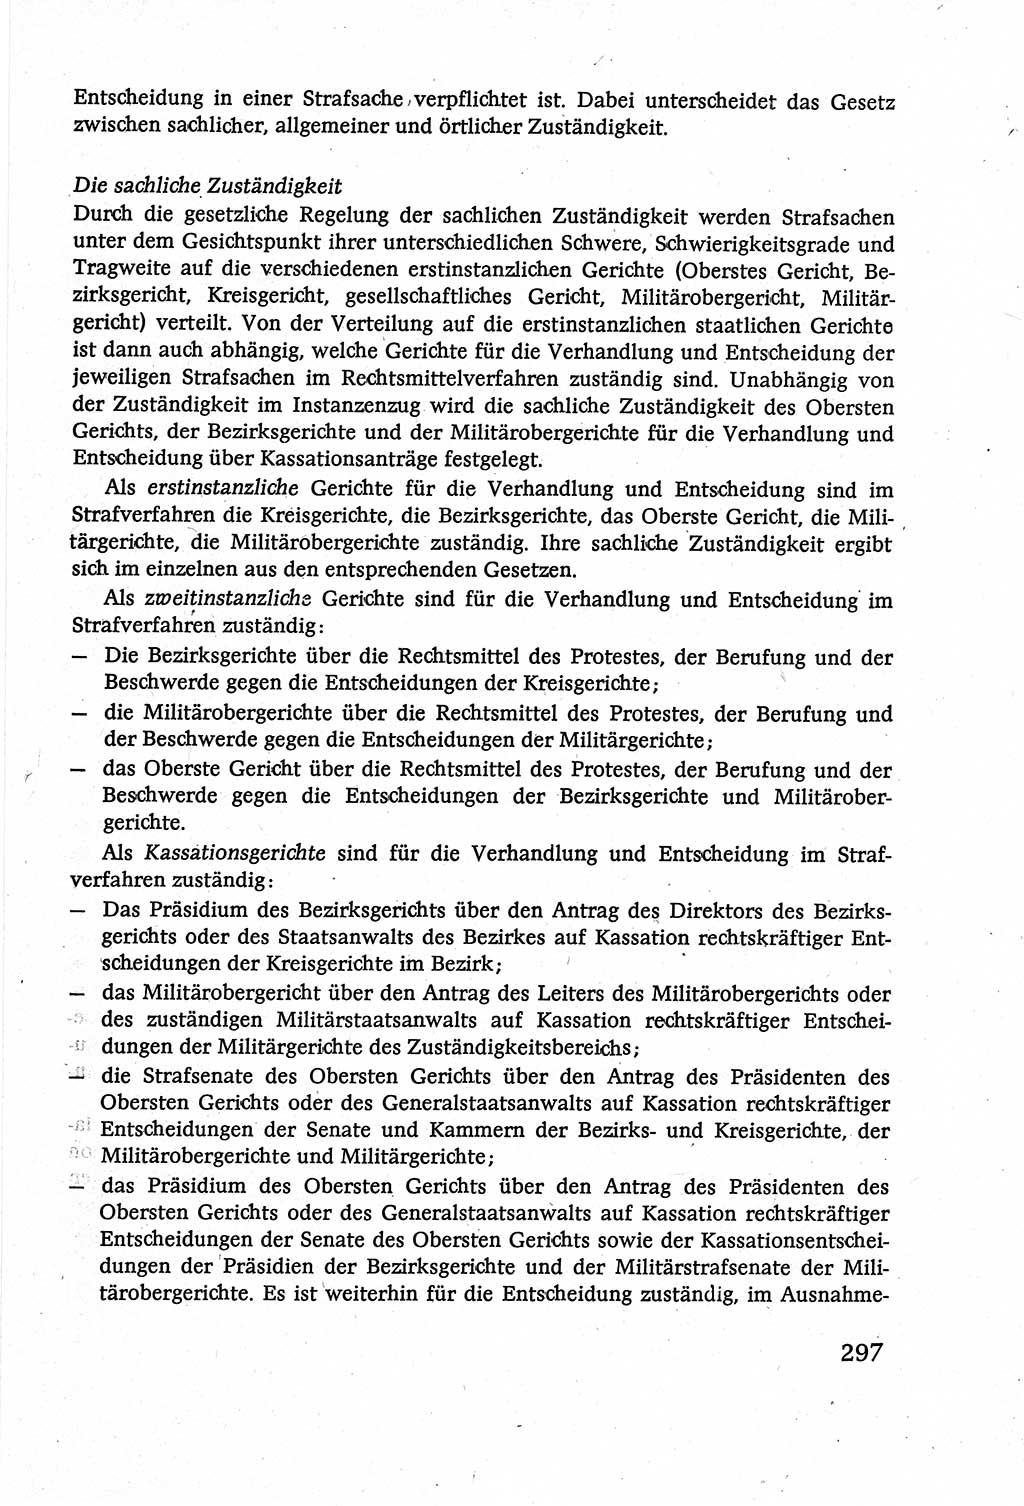 Strafverfahrensrecht [Deutsche Demokratische Republik (DDR)], Lehrbuch 1977, Seite 297 (Strafverf.-R. DDR Lb. 1977, S. 297)